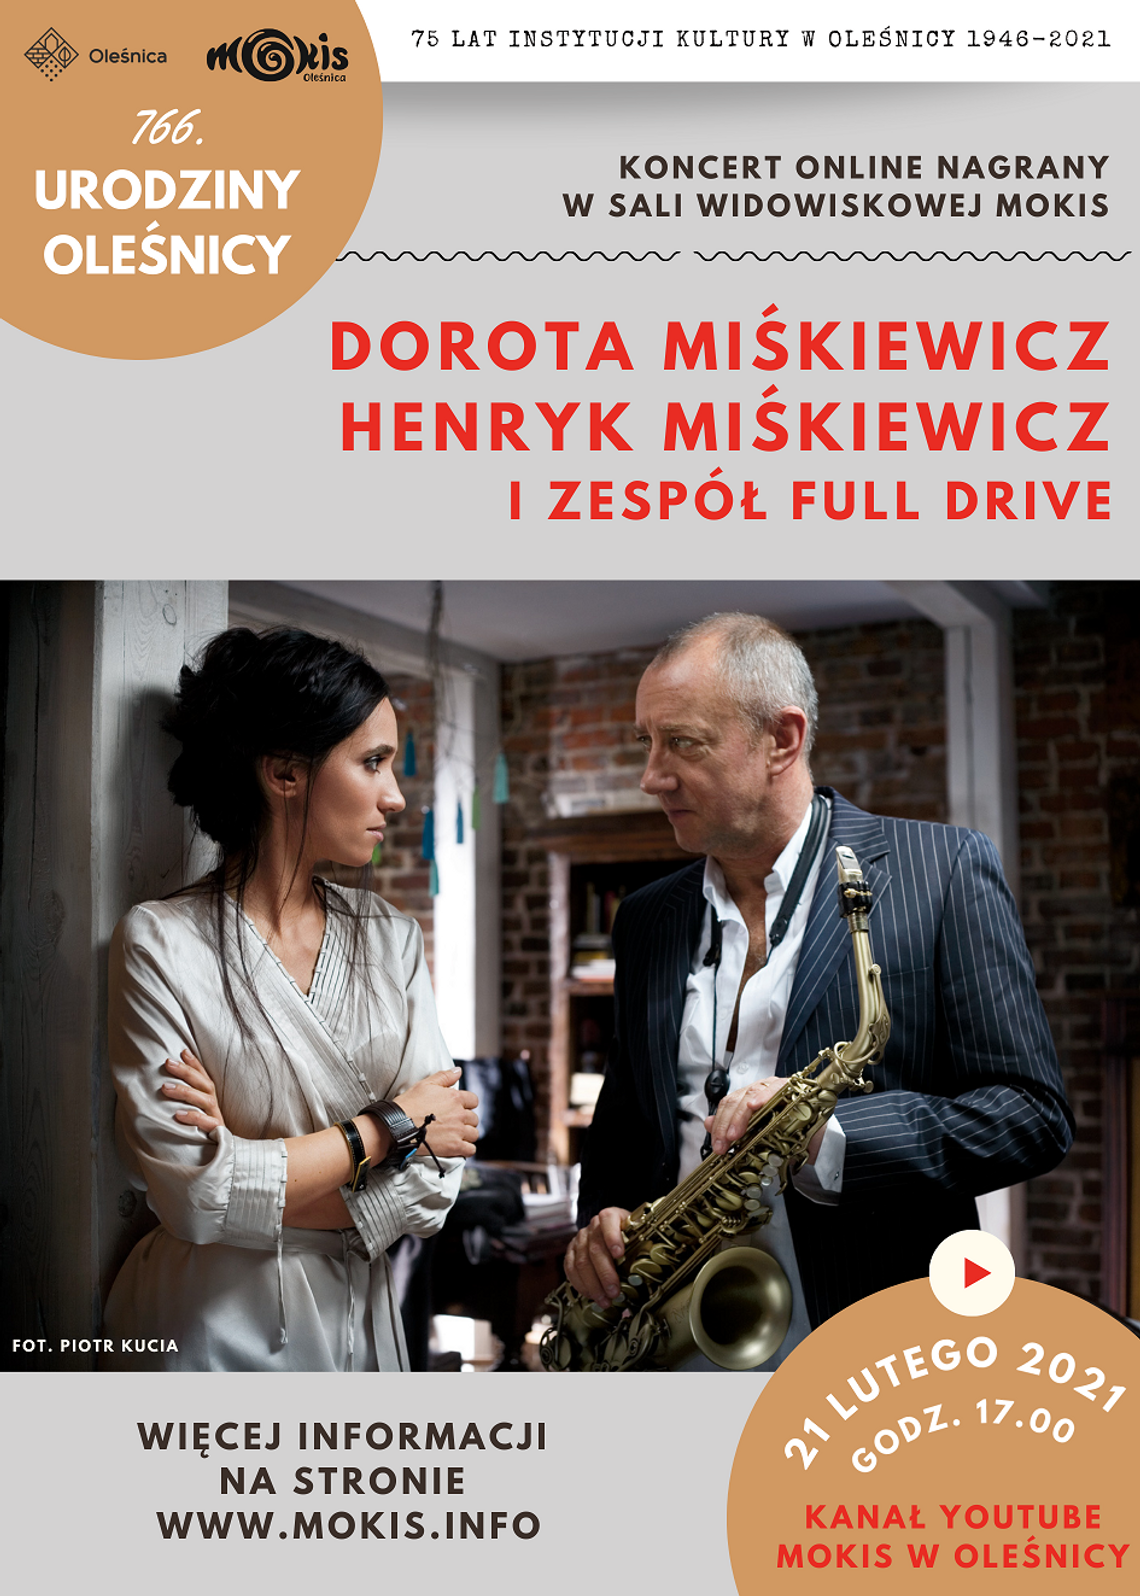 Oleśnica jazzuje z Miśkiewiczami